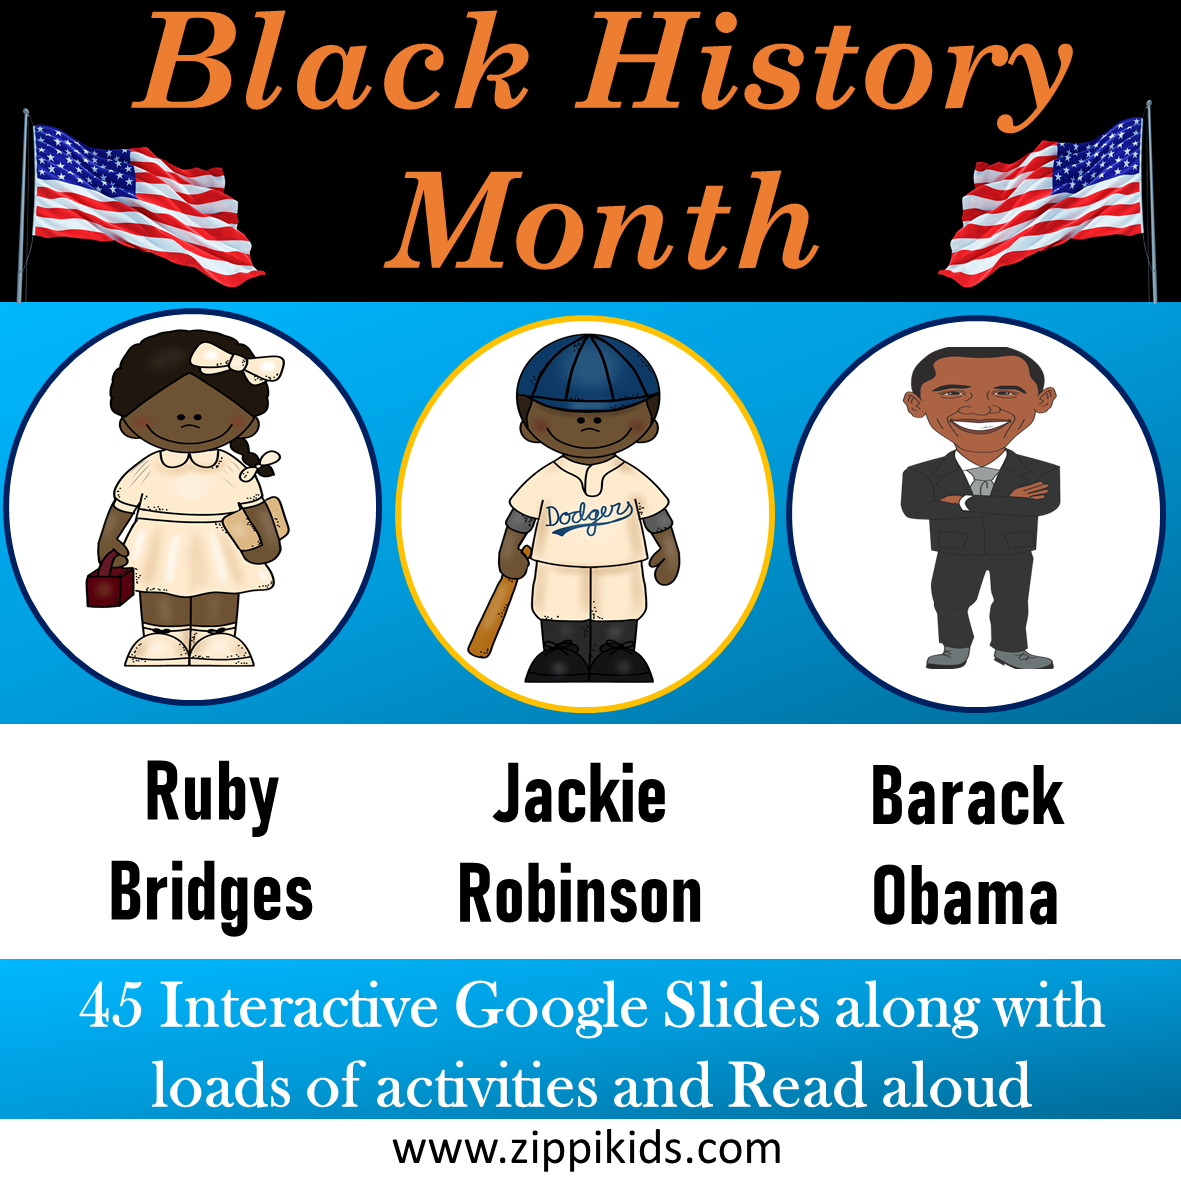 Ruby Bridge, Jackie Robinson, Barack Obama - 42 Google Slides